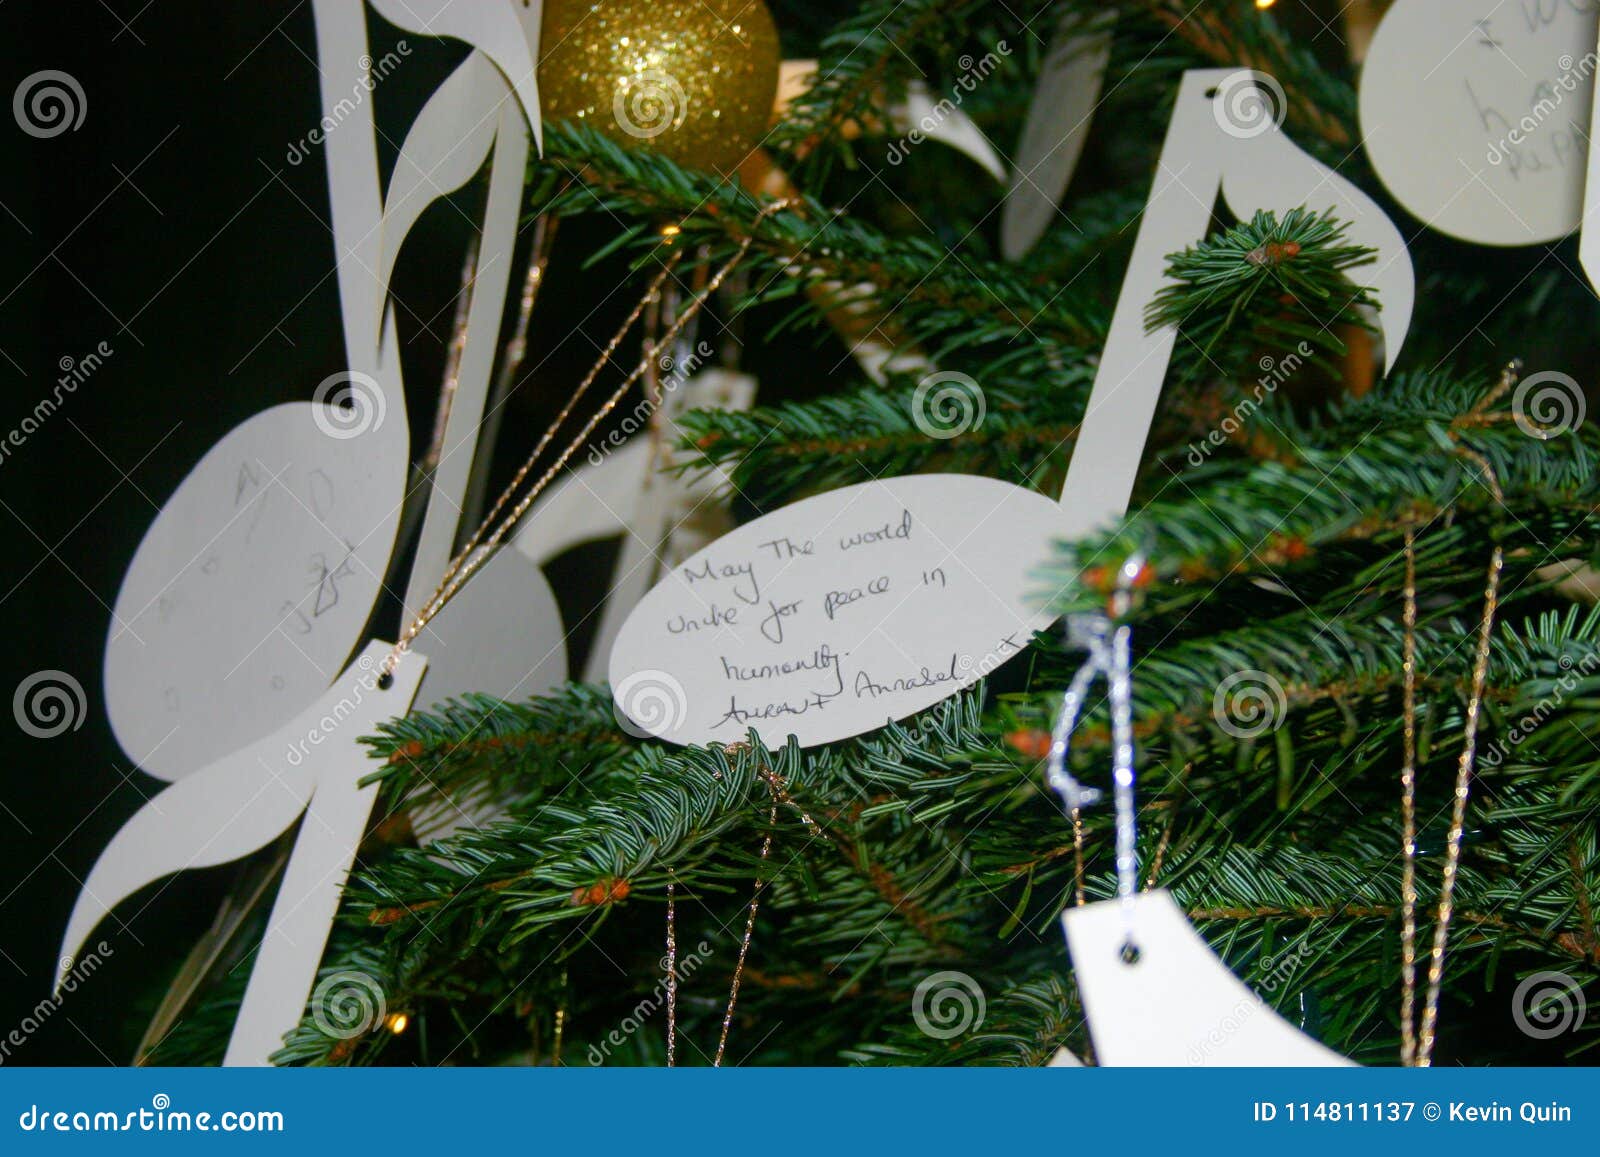 Desejos Do Natal Pendurados Em Uma árvore De Natal Imagem de Stock - Imagem  de natal, dourado: 114811137